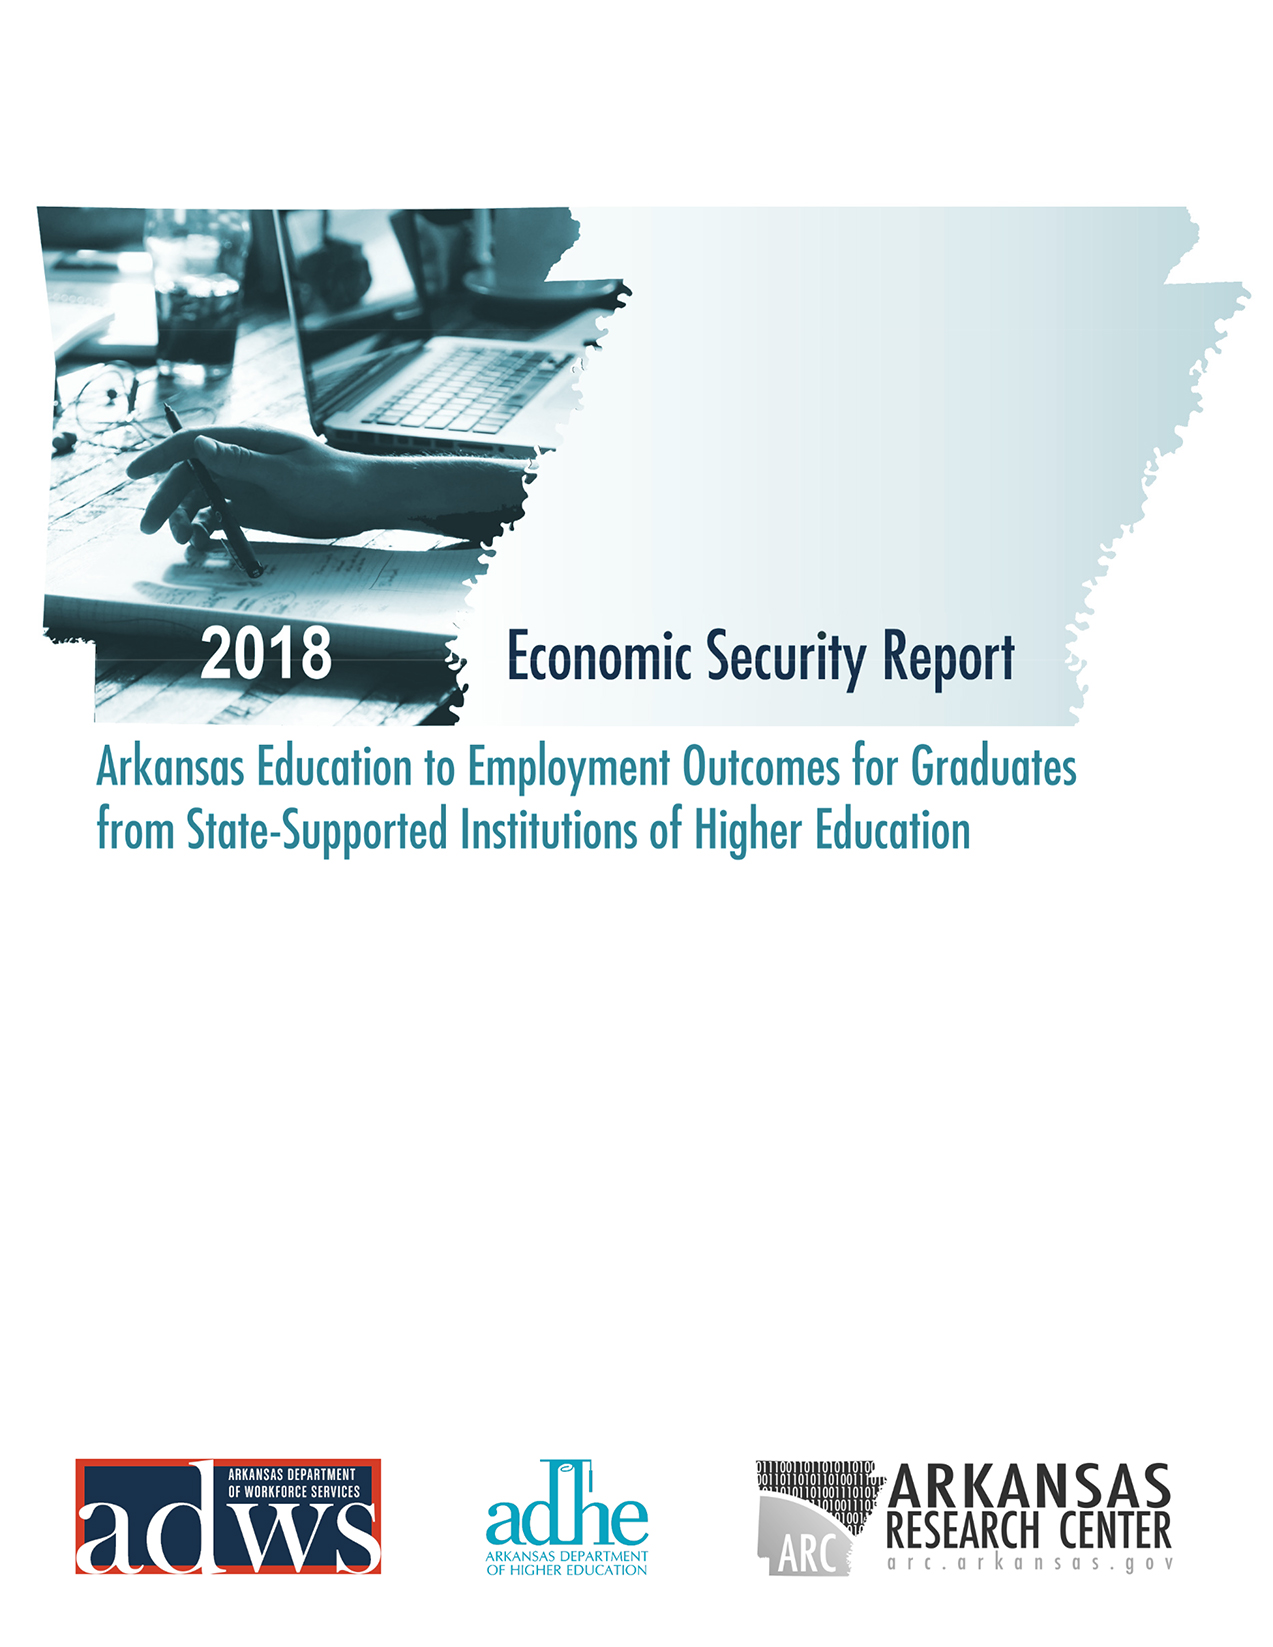 Economic Security Report (2018) summary